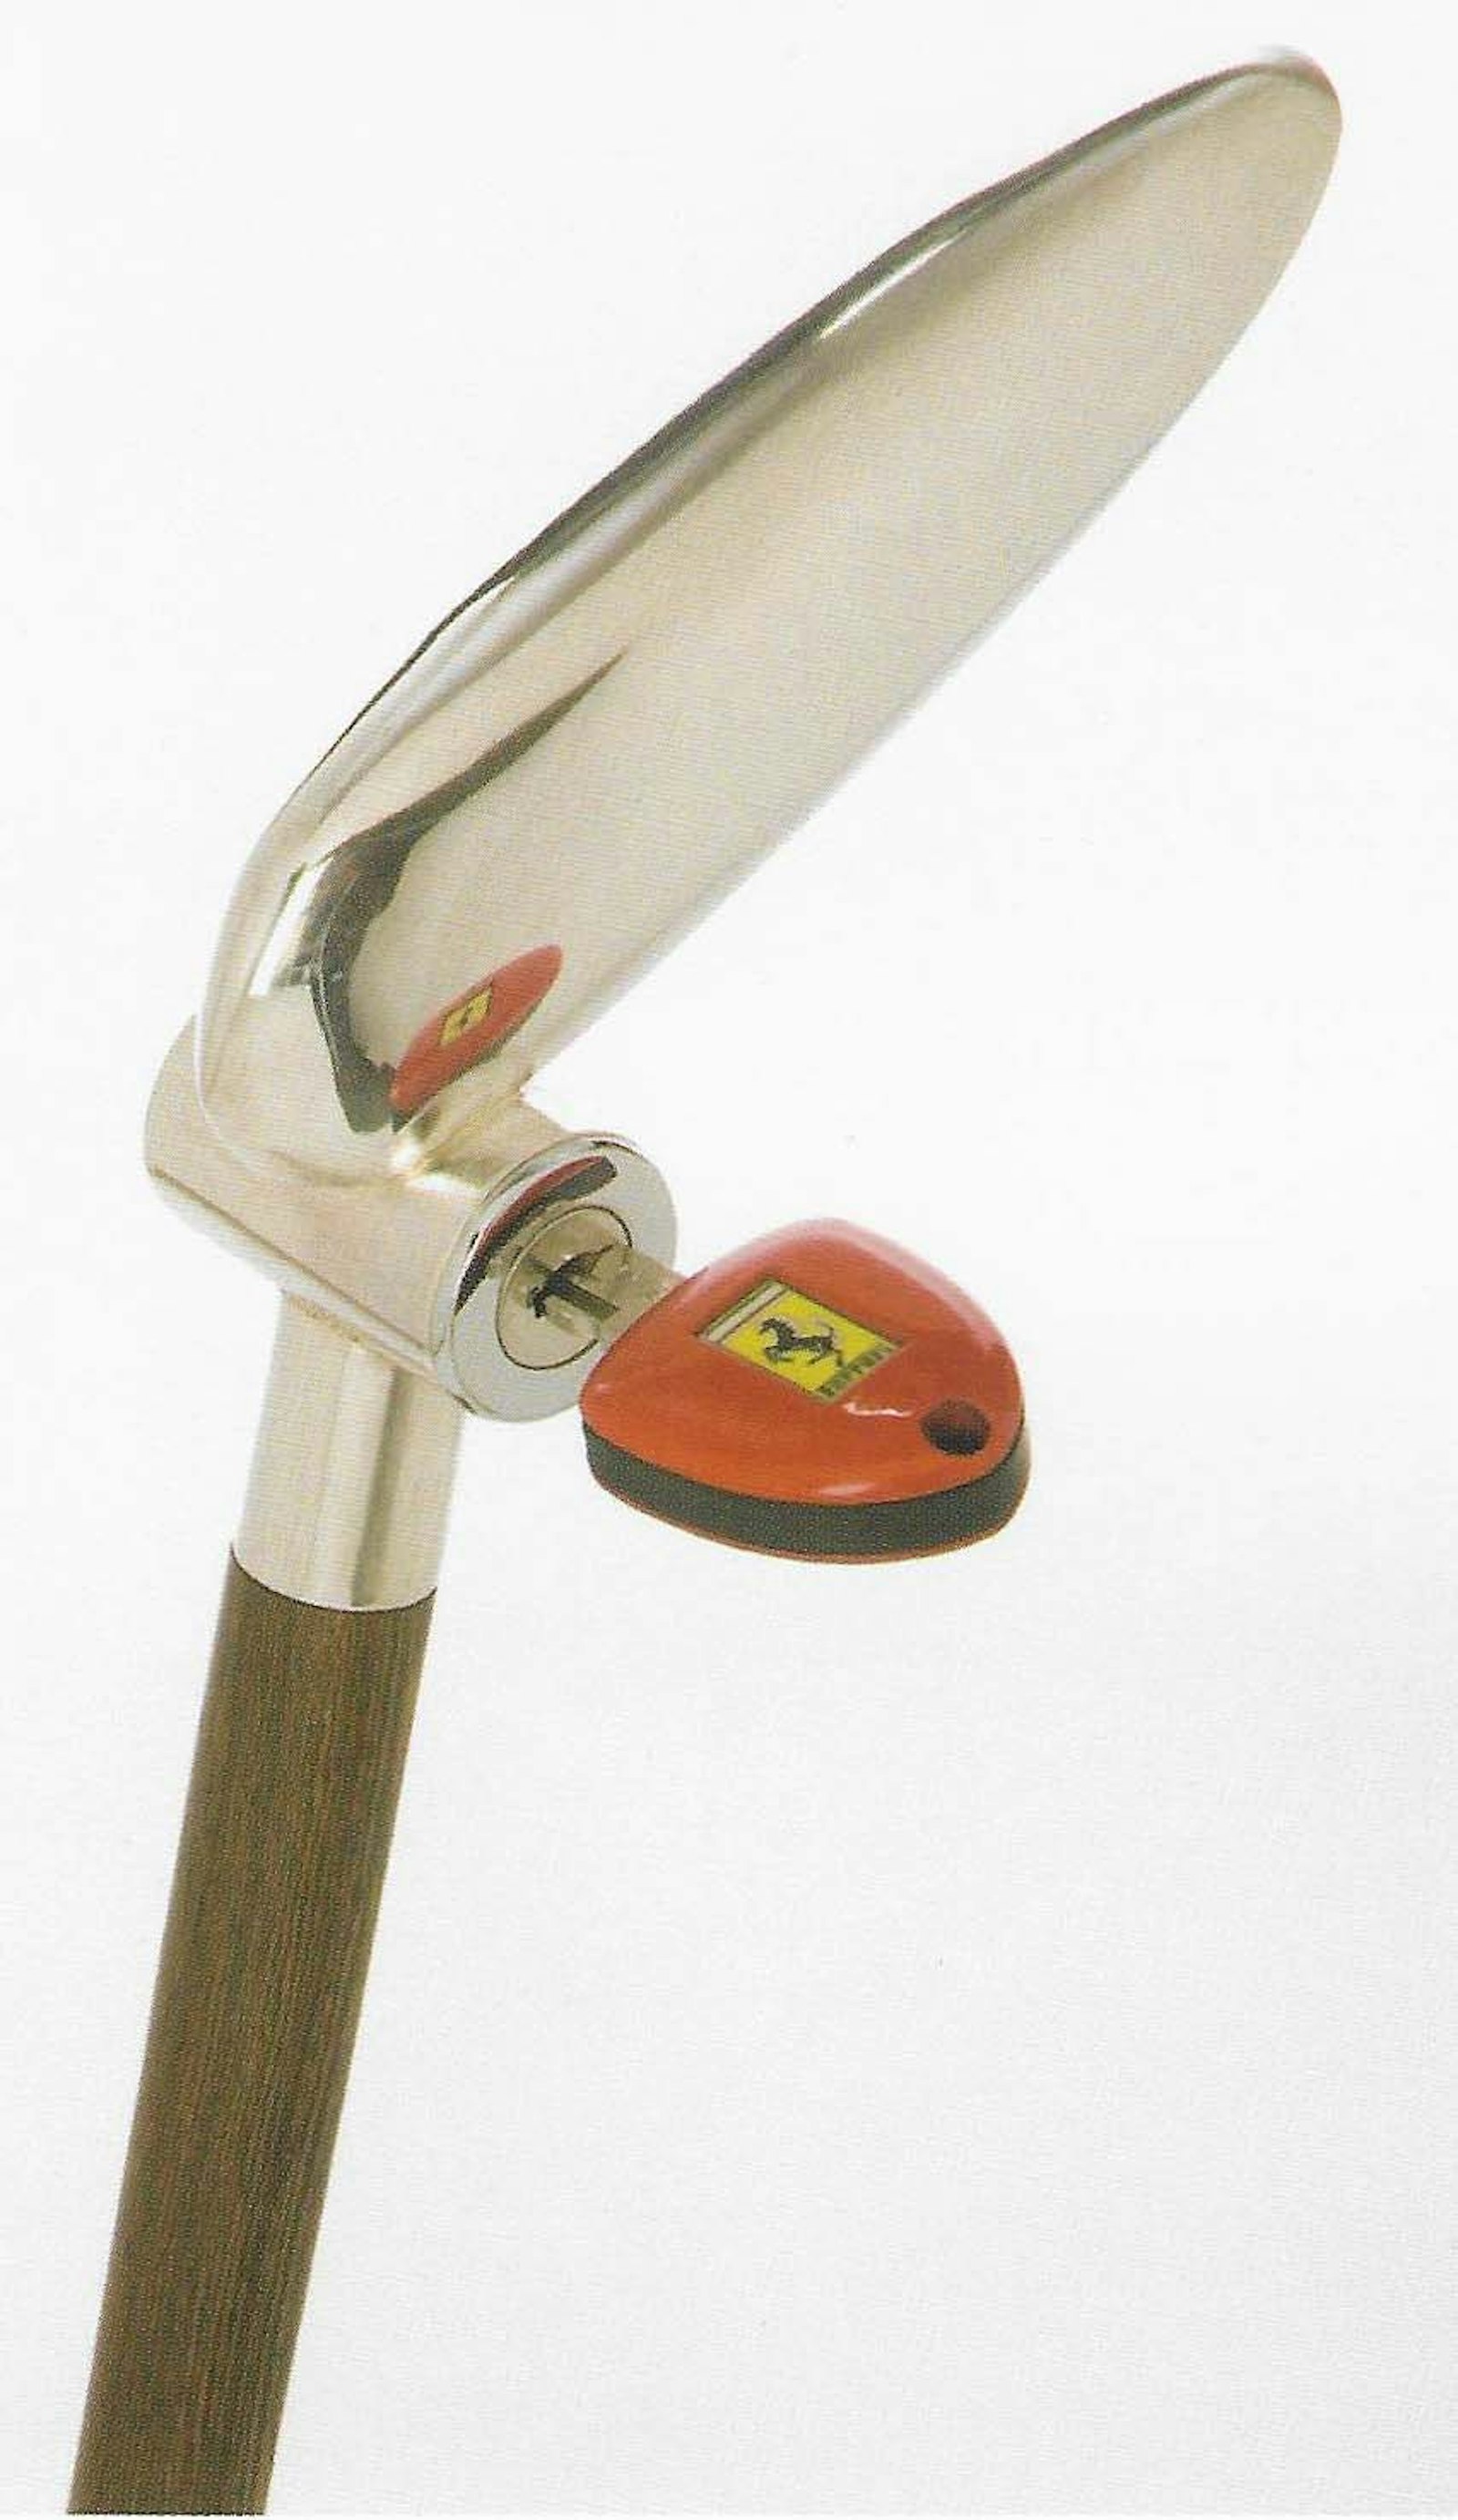 Wert-Zeichen, 2007, cane, silver, wood and built-in Ferrari key